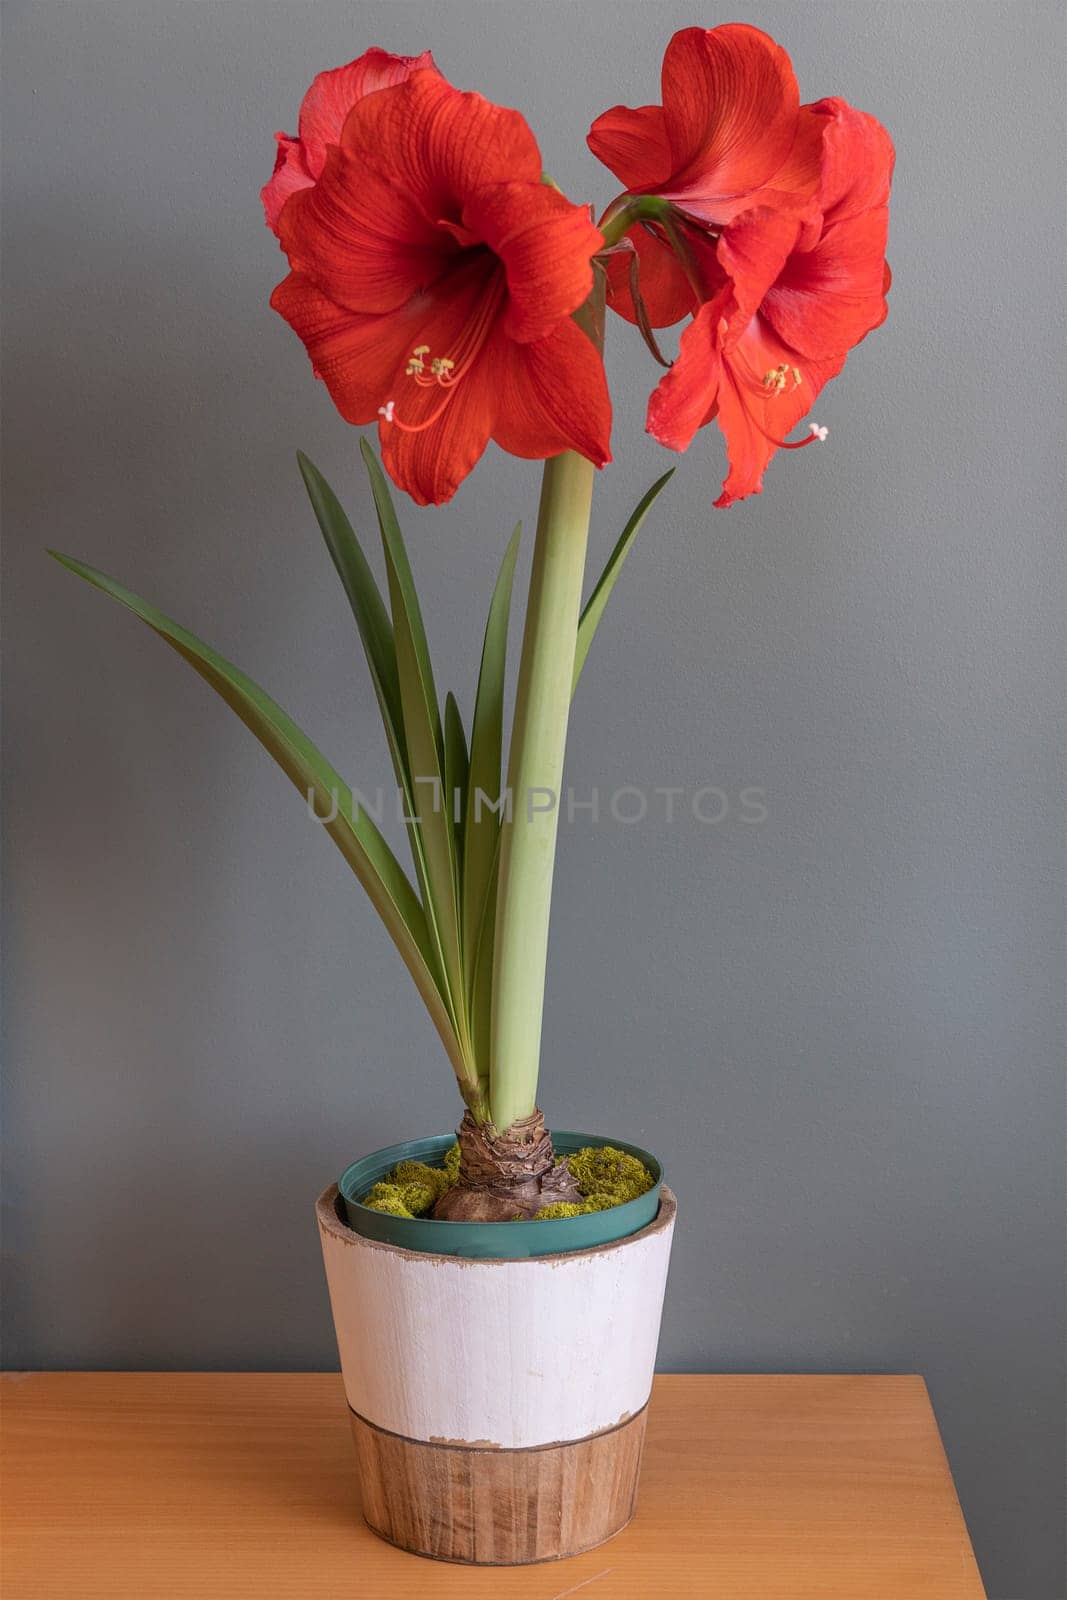 Red amaryllis flower by ben44